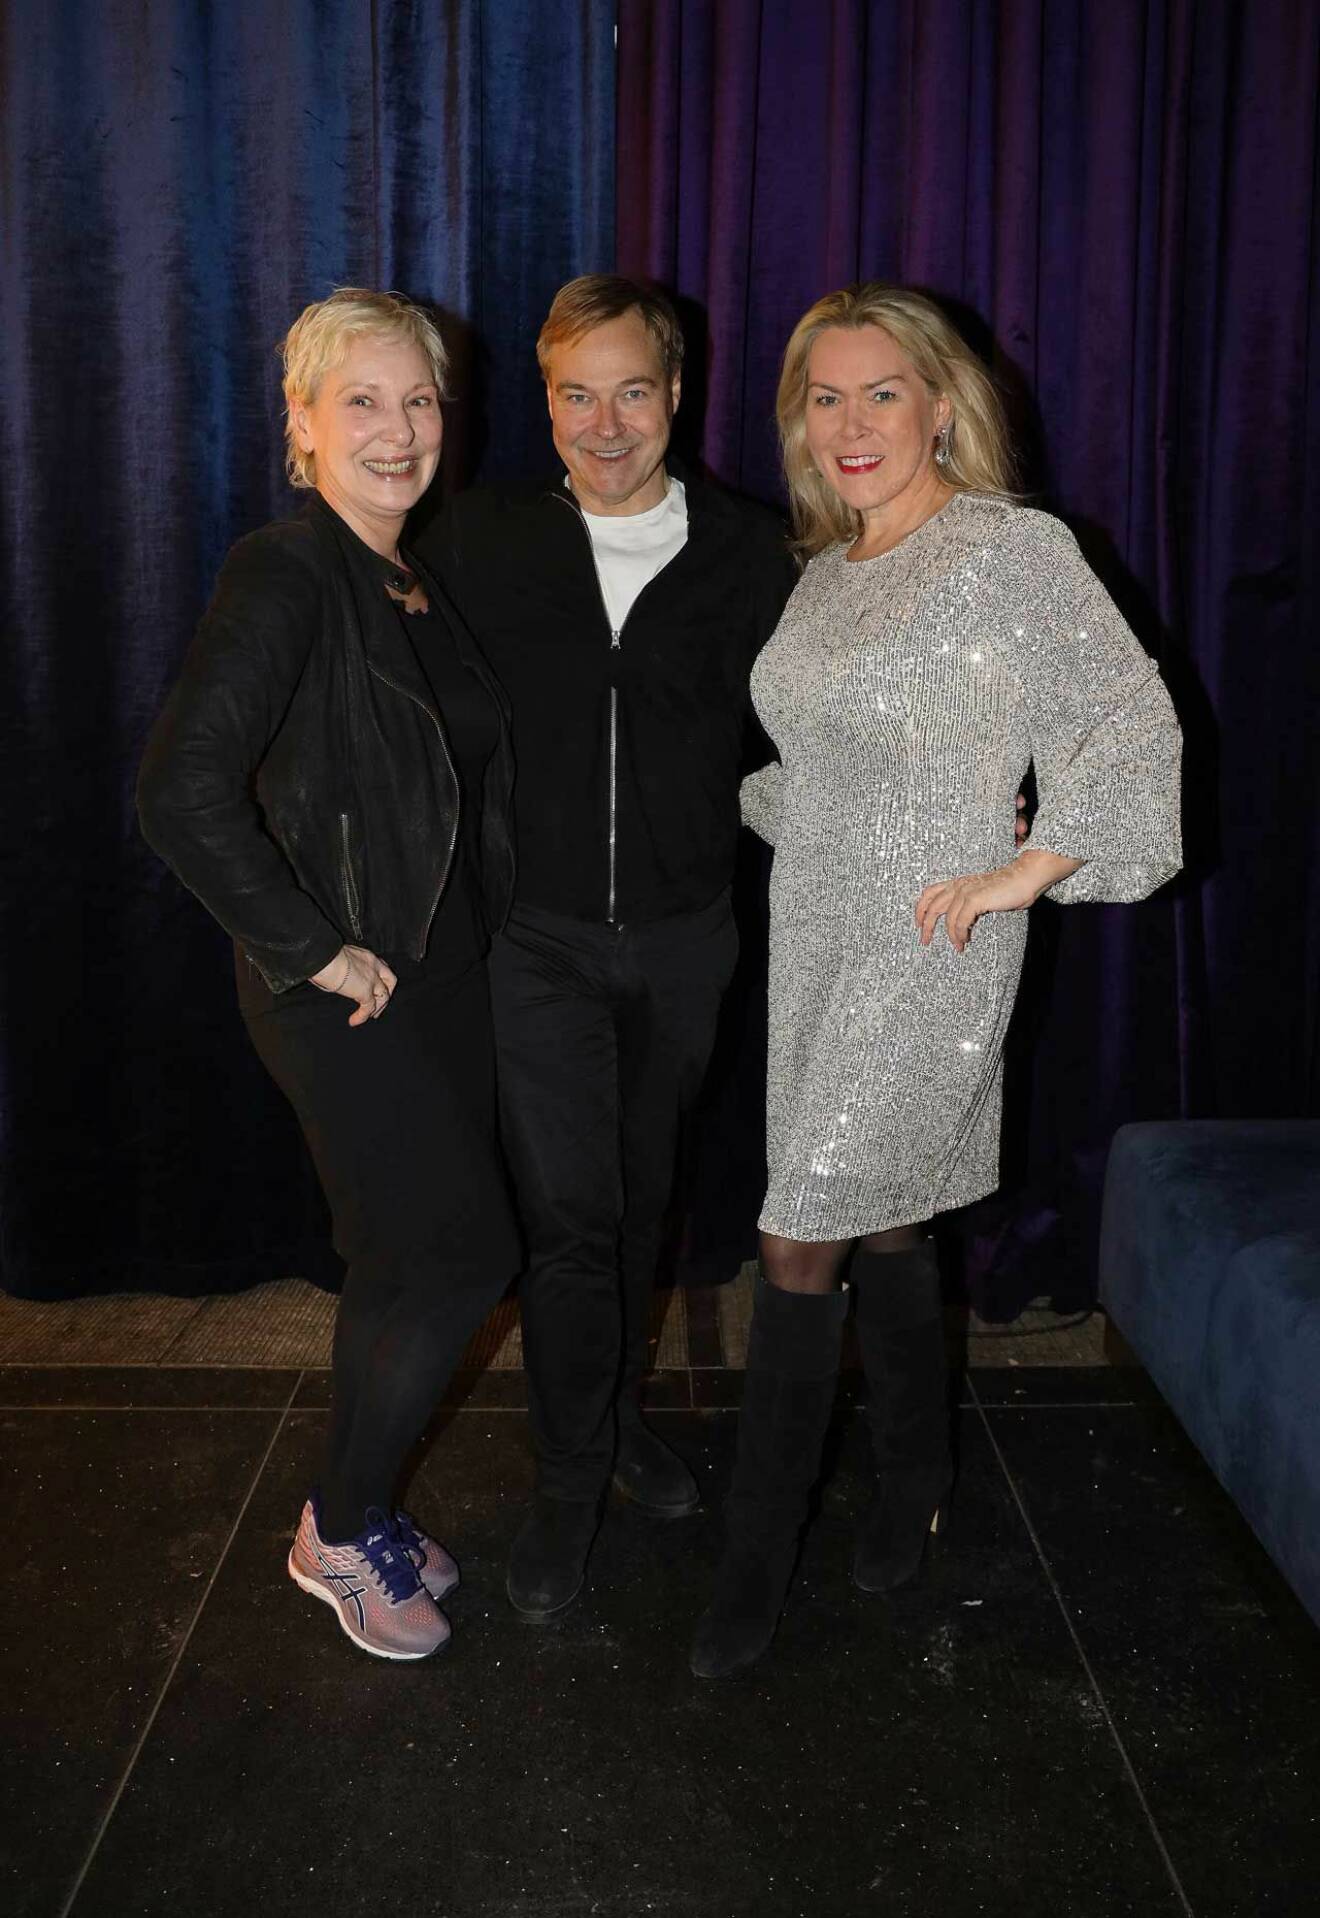 Svenska Filminstitutets presschef Jan Göransson trivdes med Marianne Djudic och Ann-Louice Dahlgren.